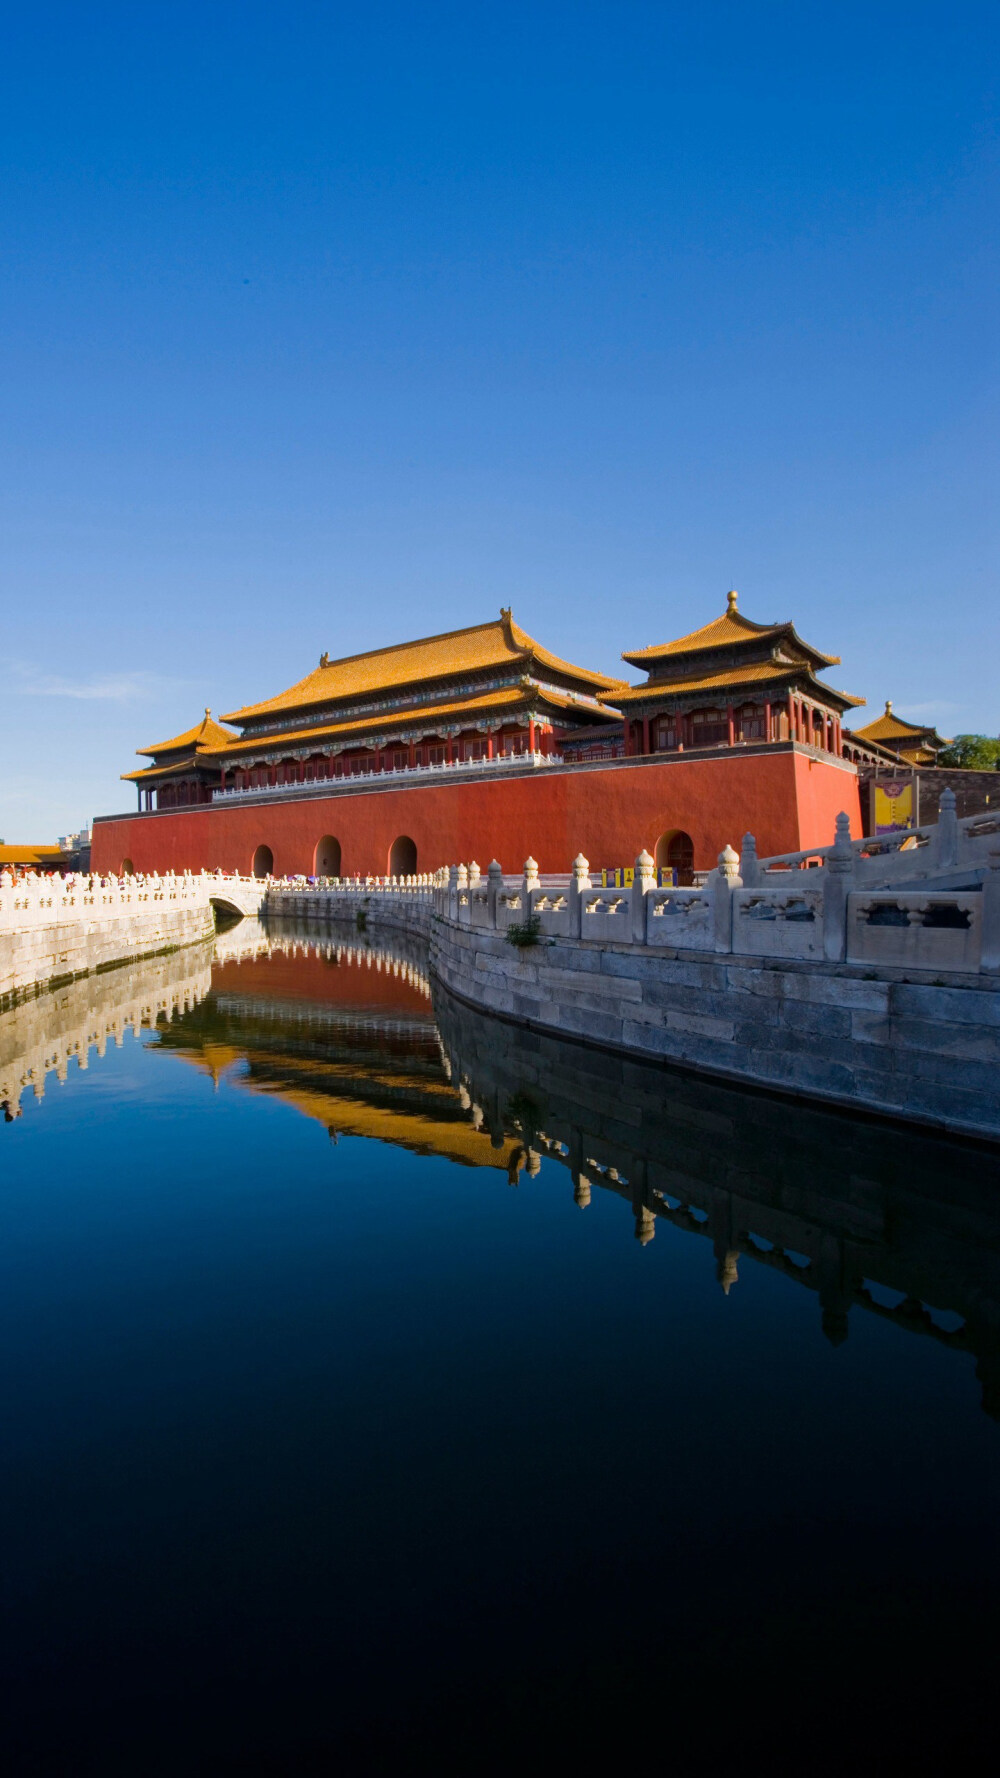 北京故宫是世界上现存规模最大,保存最为完整的木质结构古建筑之一.